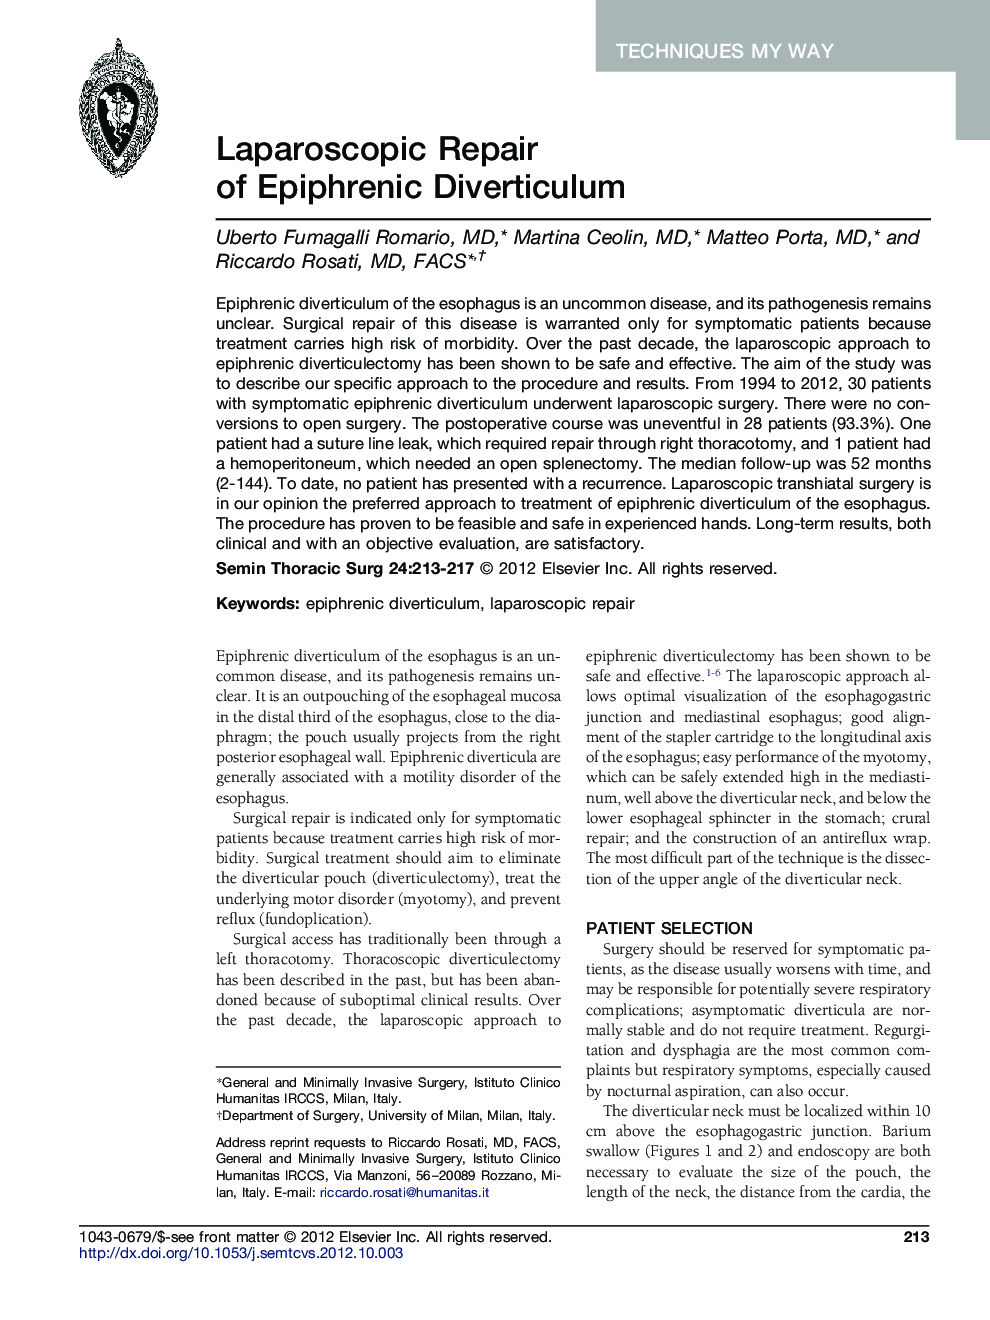 Laparoscopic Repair of Epiphrenic Diverticulum